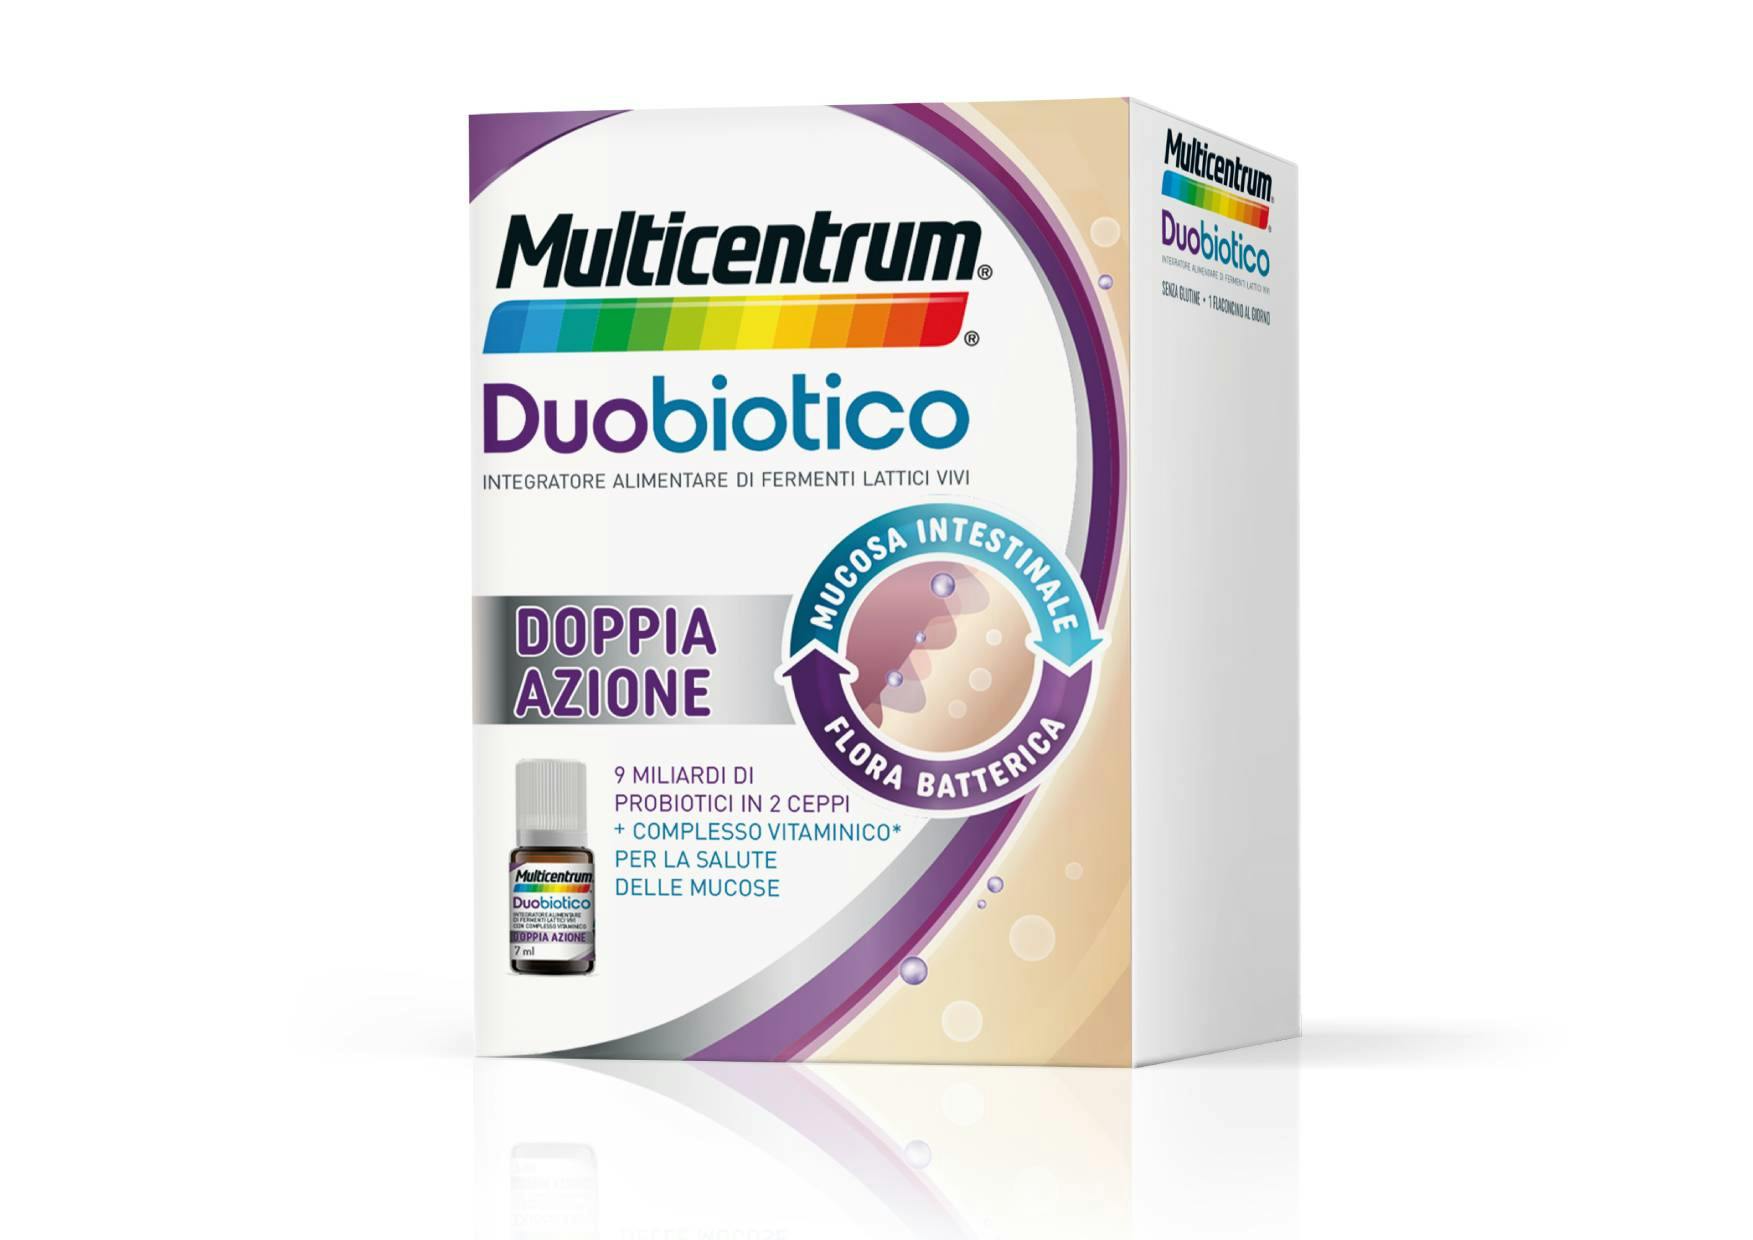 Multicentrum Duobiotico